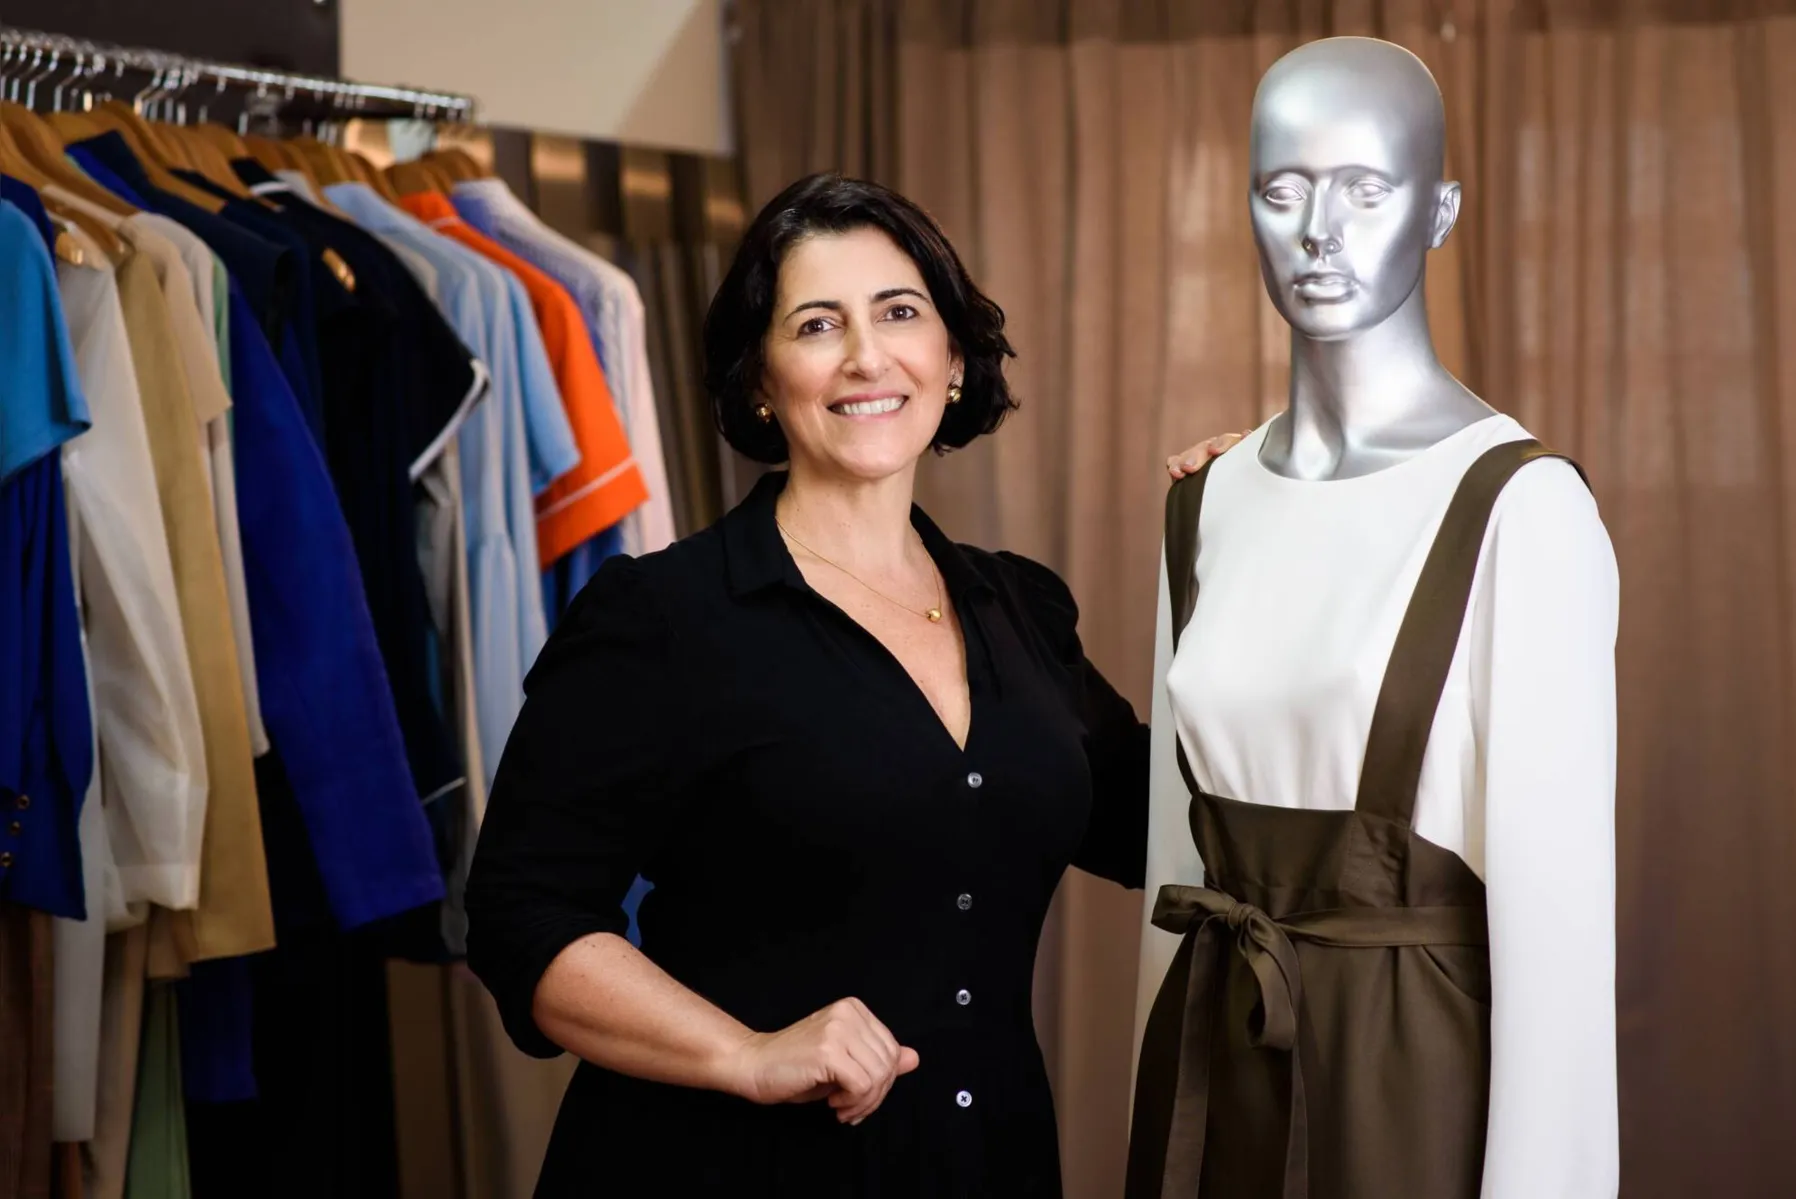 Silvia Dorè: Know-how de 25 anos em moda e roupas de qualidade e confortáveis abriram mercado para a empresária